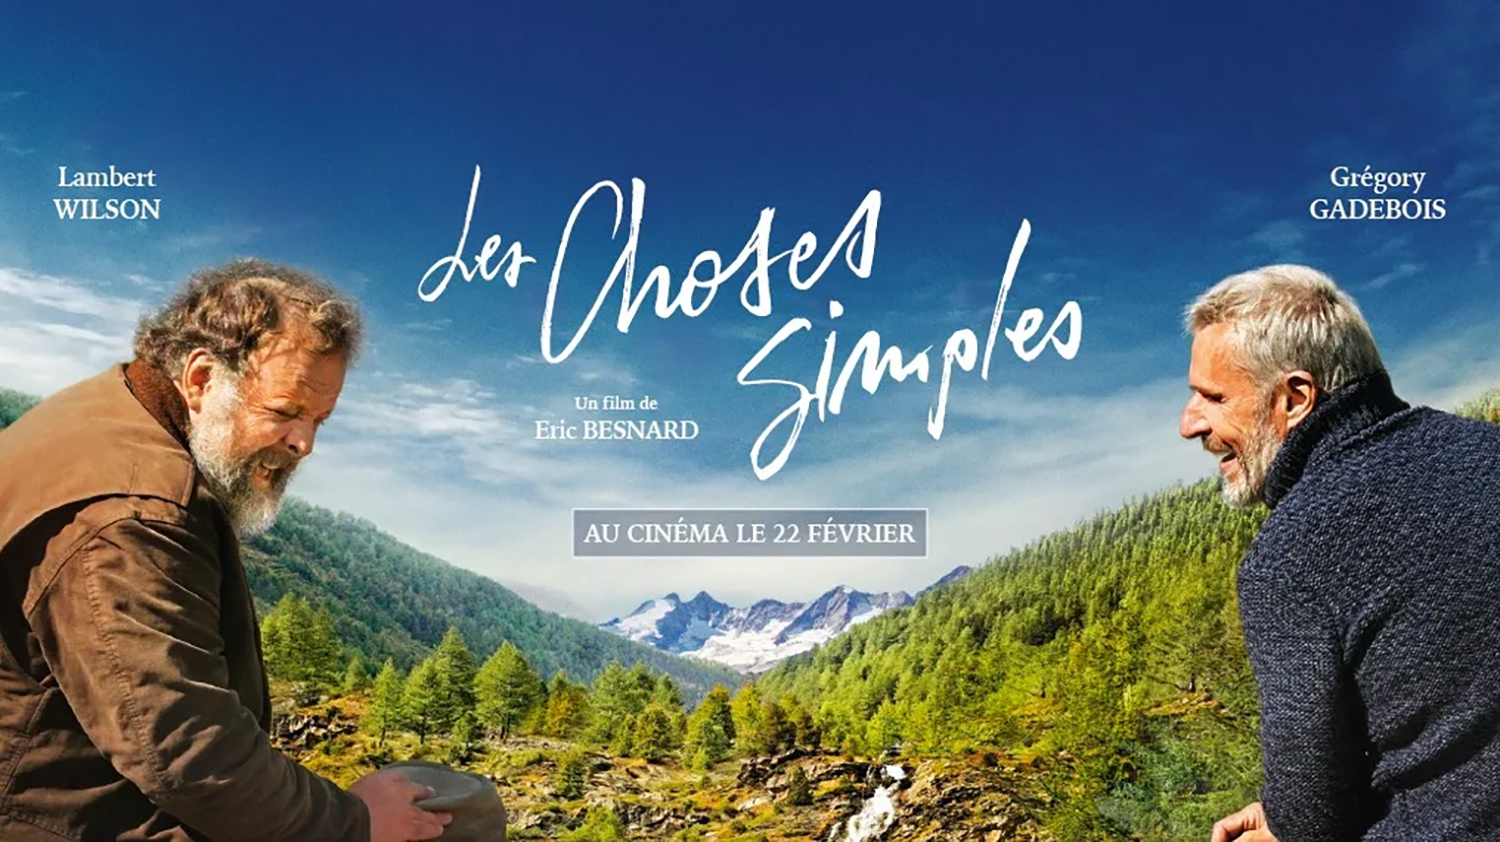 Les Choses Simples 2023: أين يتم تصوير الفيلم؟ هل هو متاح للبث؟